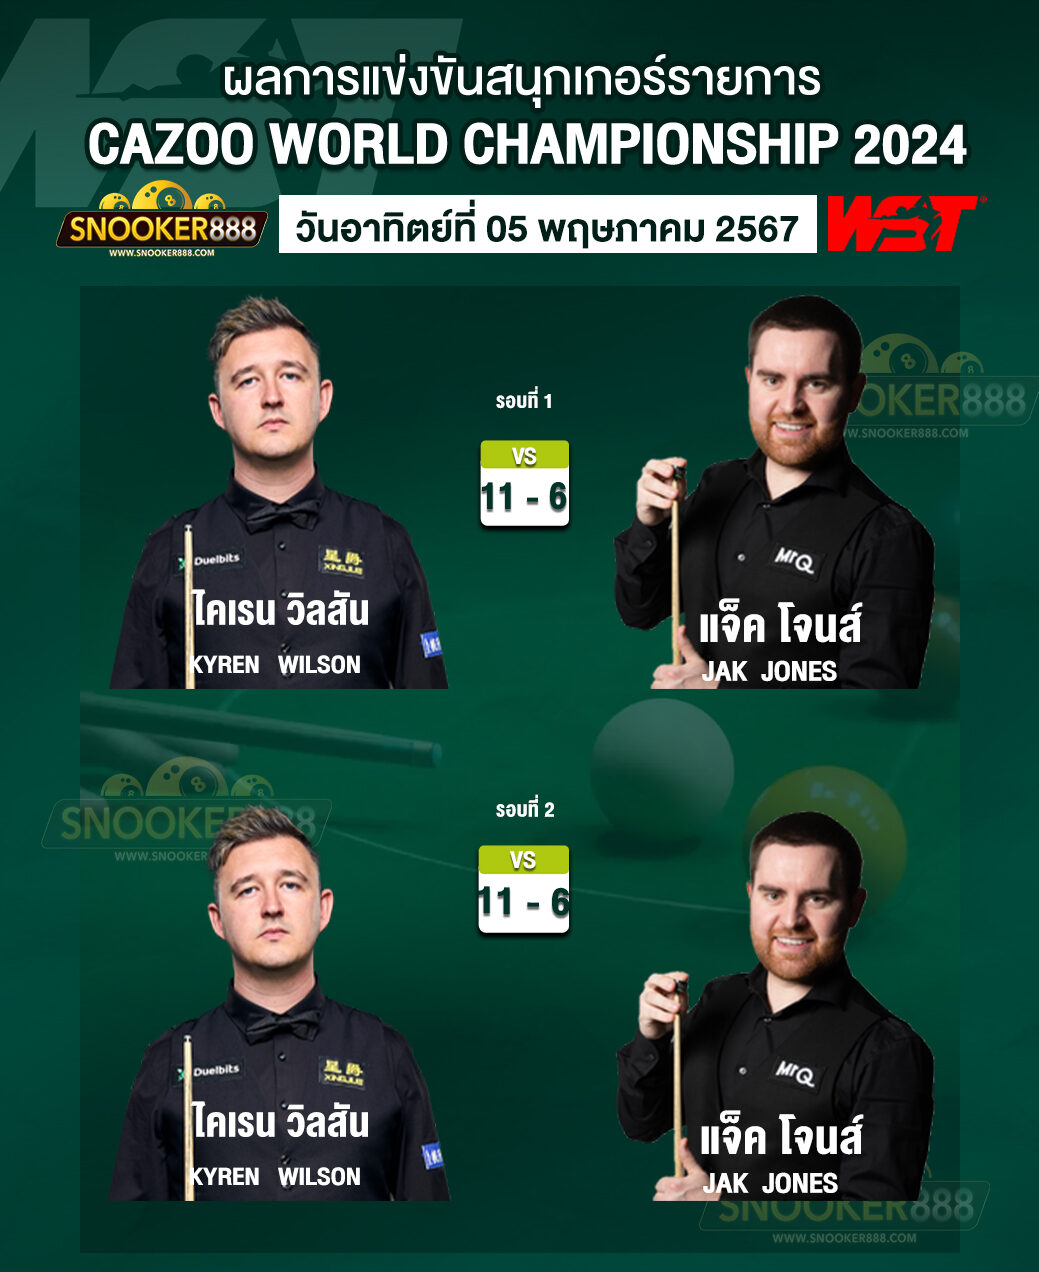 ผลการแข่งขันสนุกเกอร์ CAZOO WORLD CHAMPIONSHIP 2024 วันที่ 05 พ.ค. 67